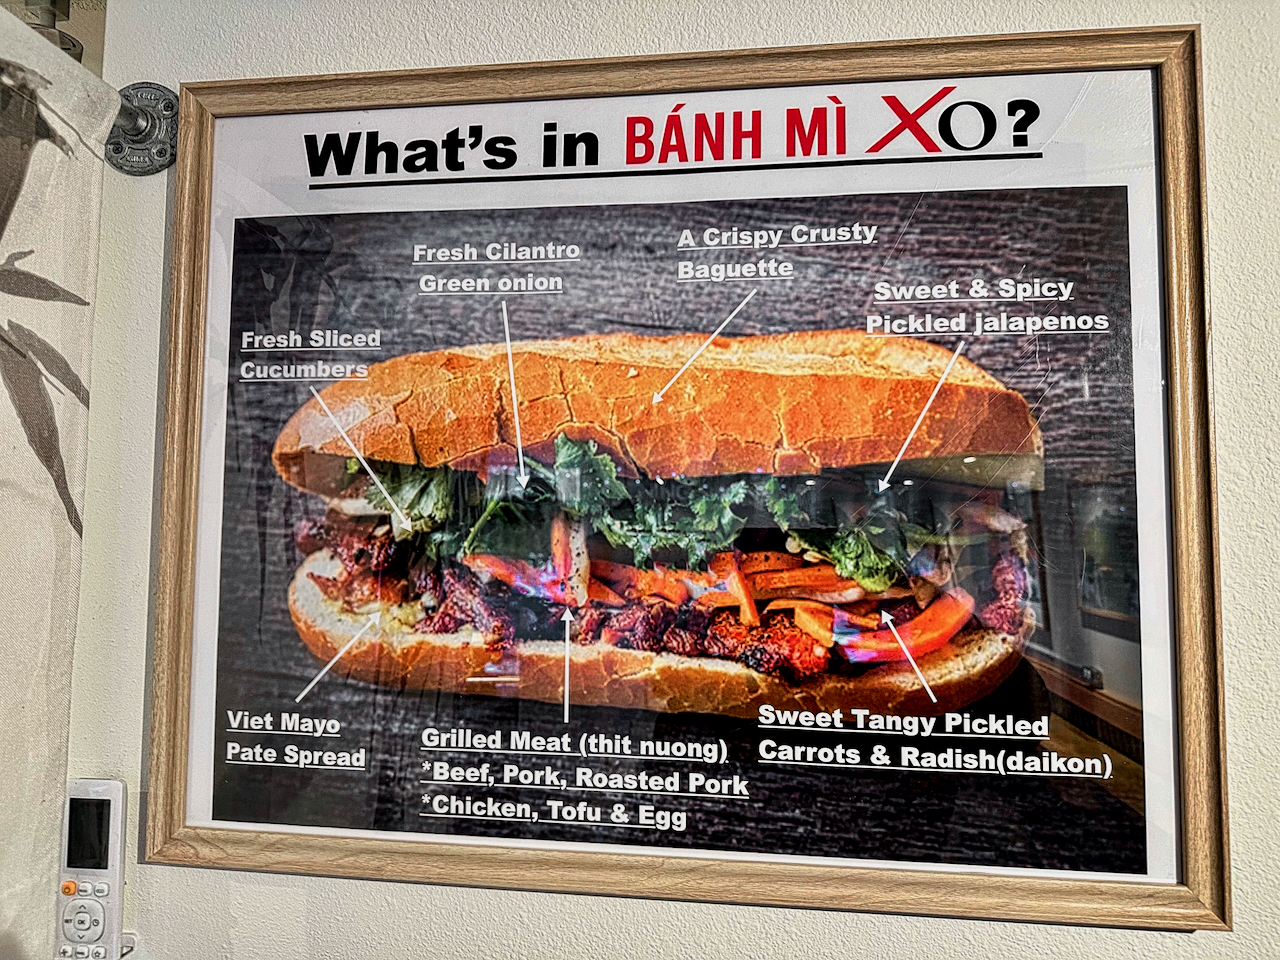 Bahn Mi sandwich